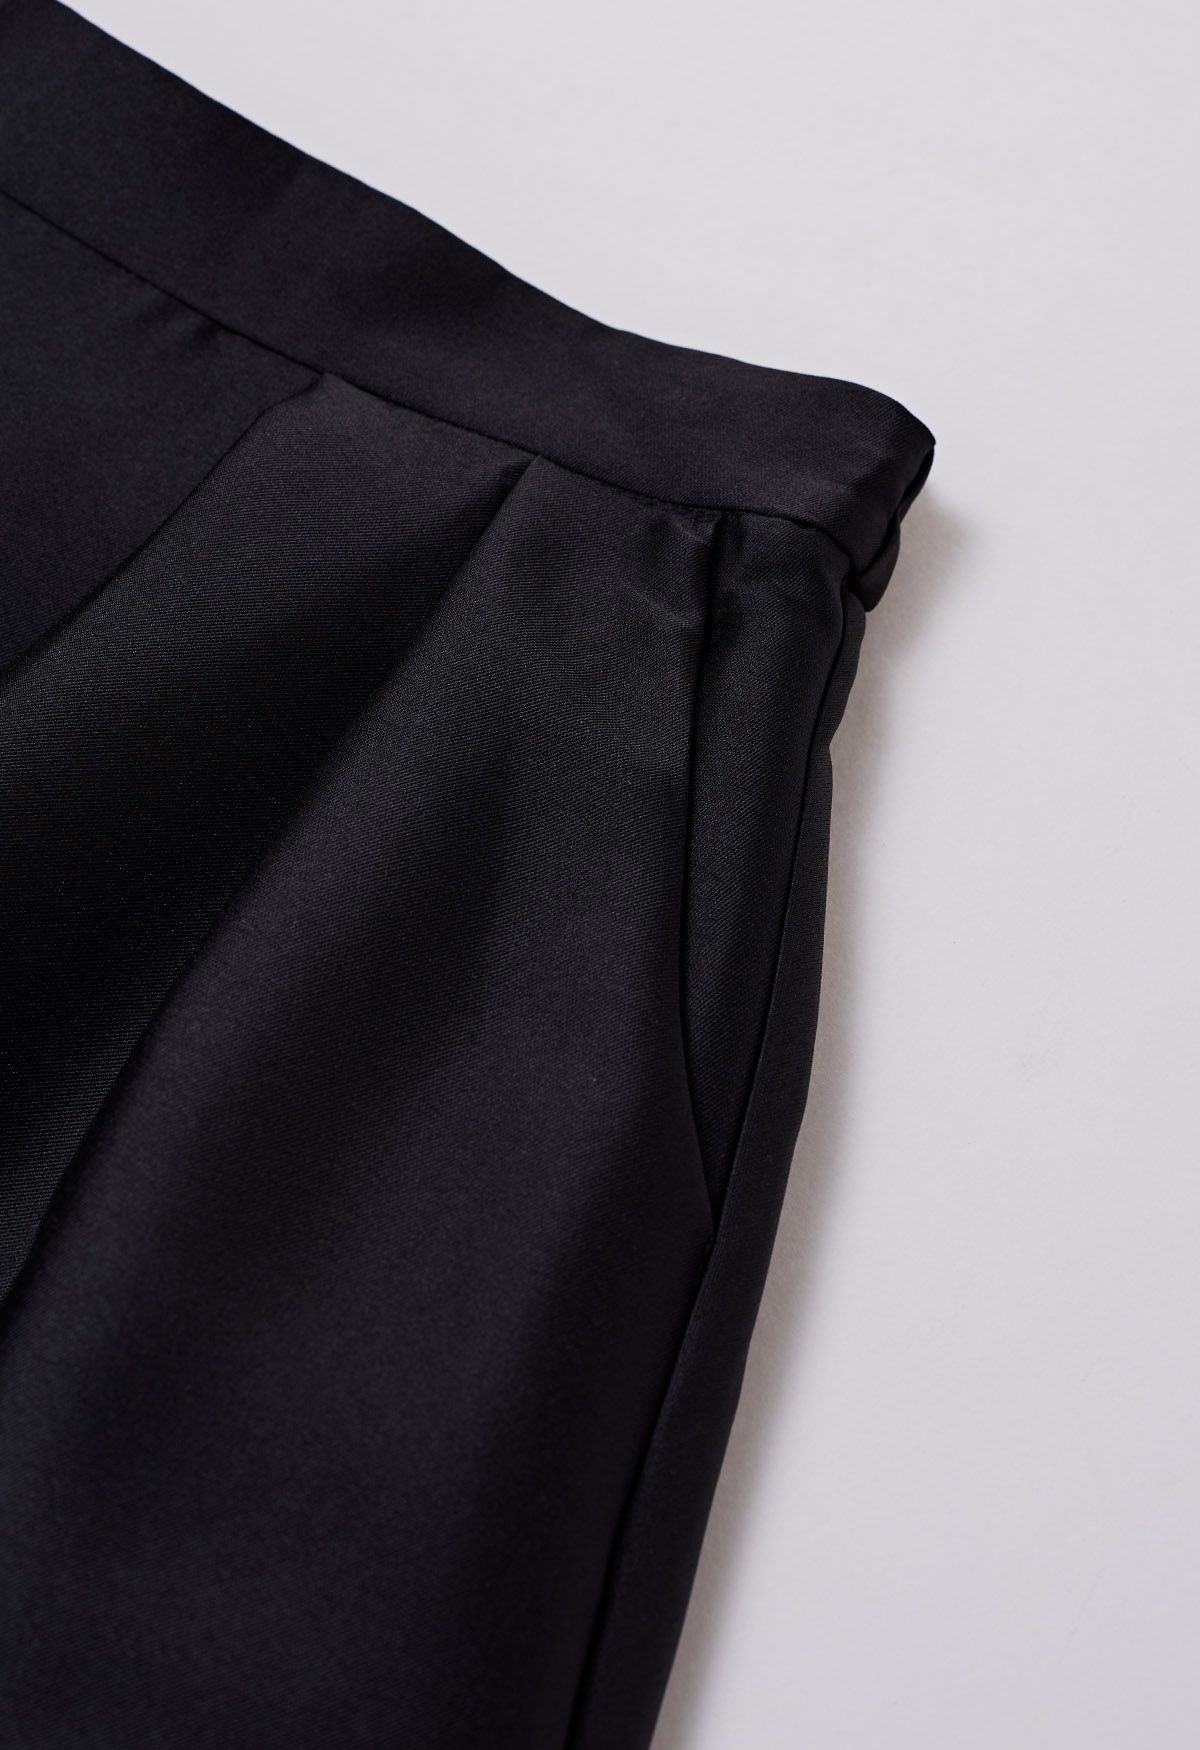 Elegante falda midi plisada de corte A con bolsillos laterales en negro